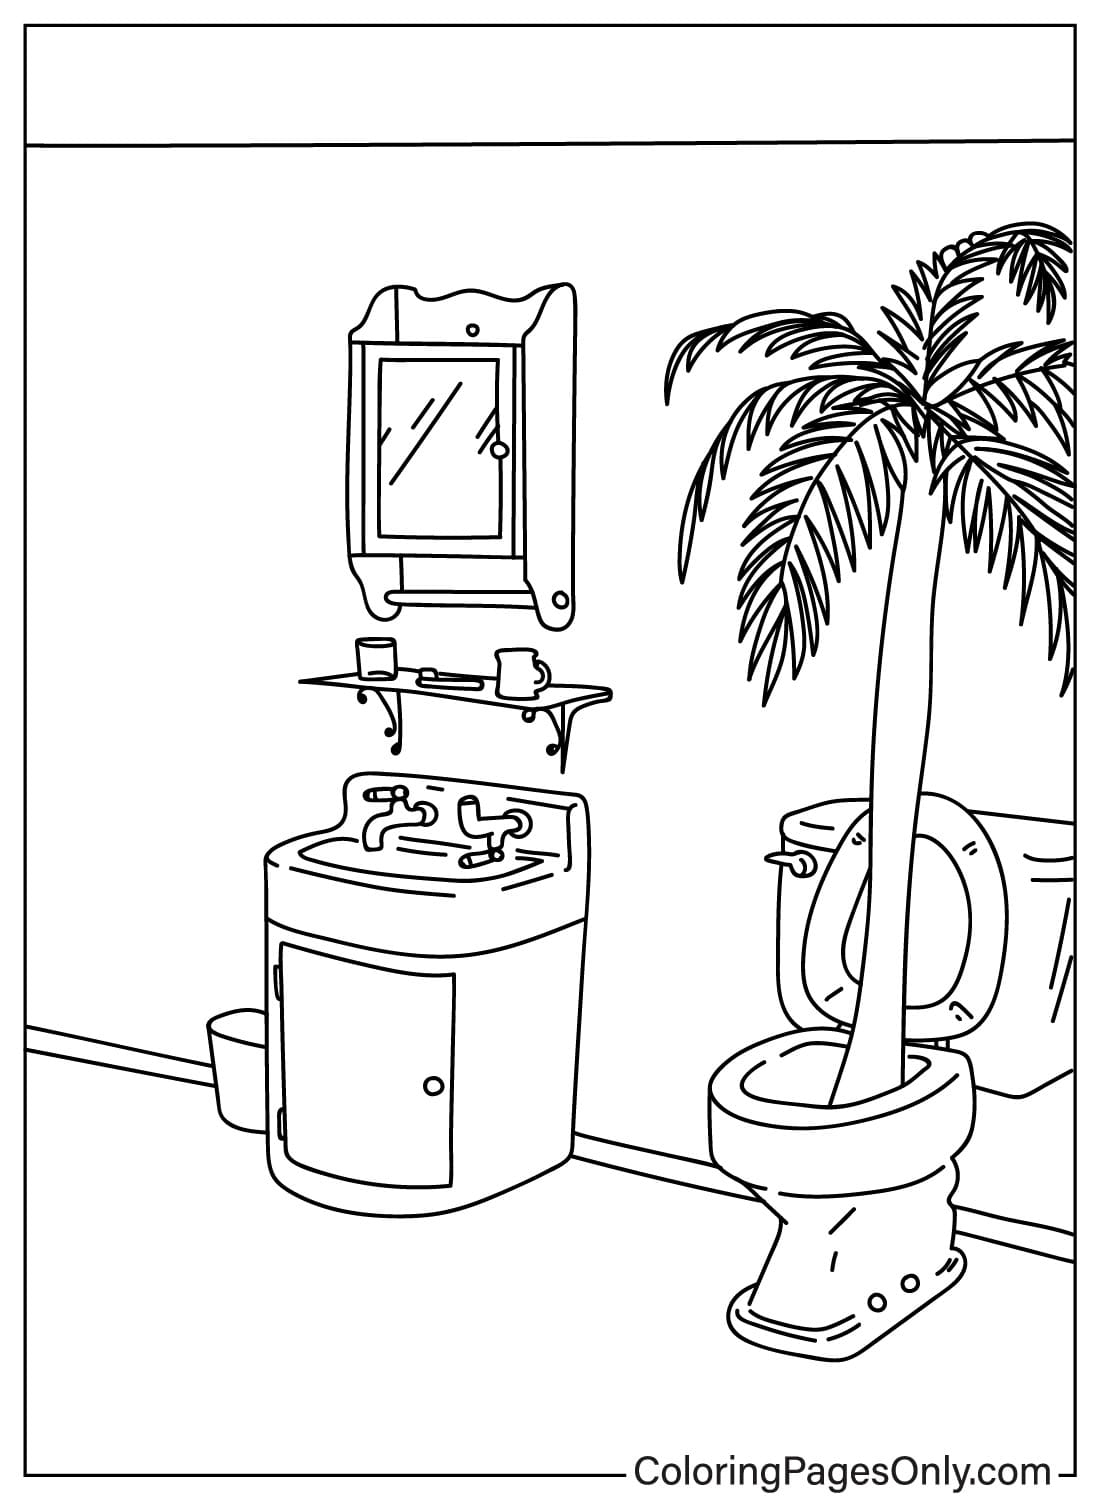 Palmboom in het toilet kleurplaat van Wacky Wednesday